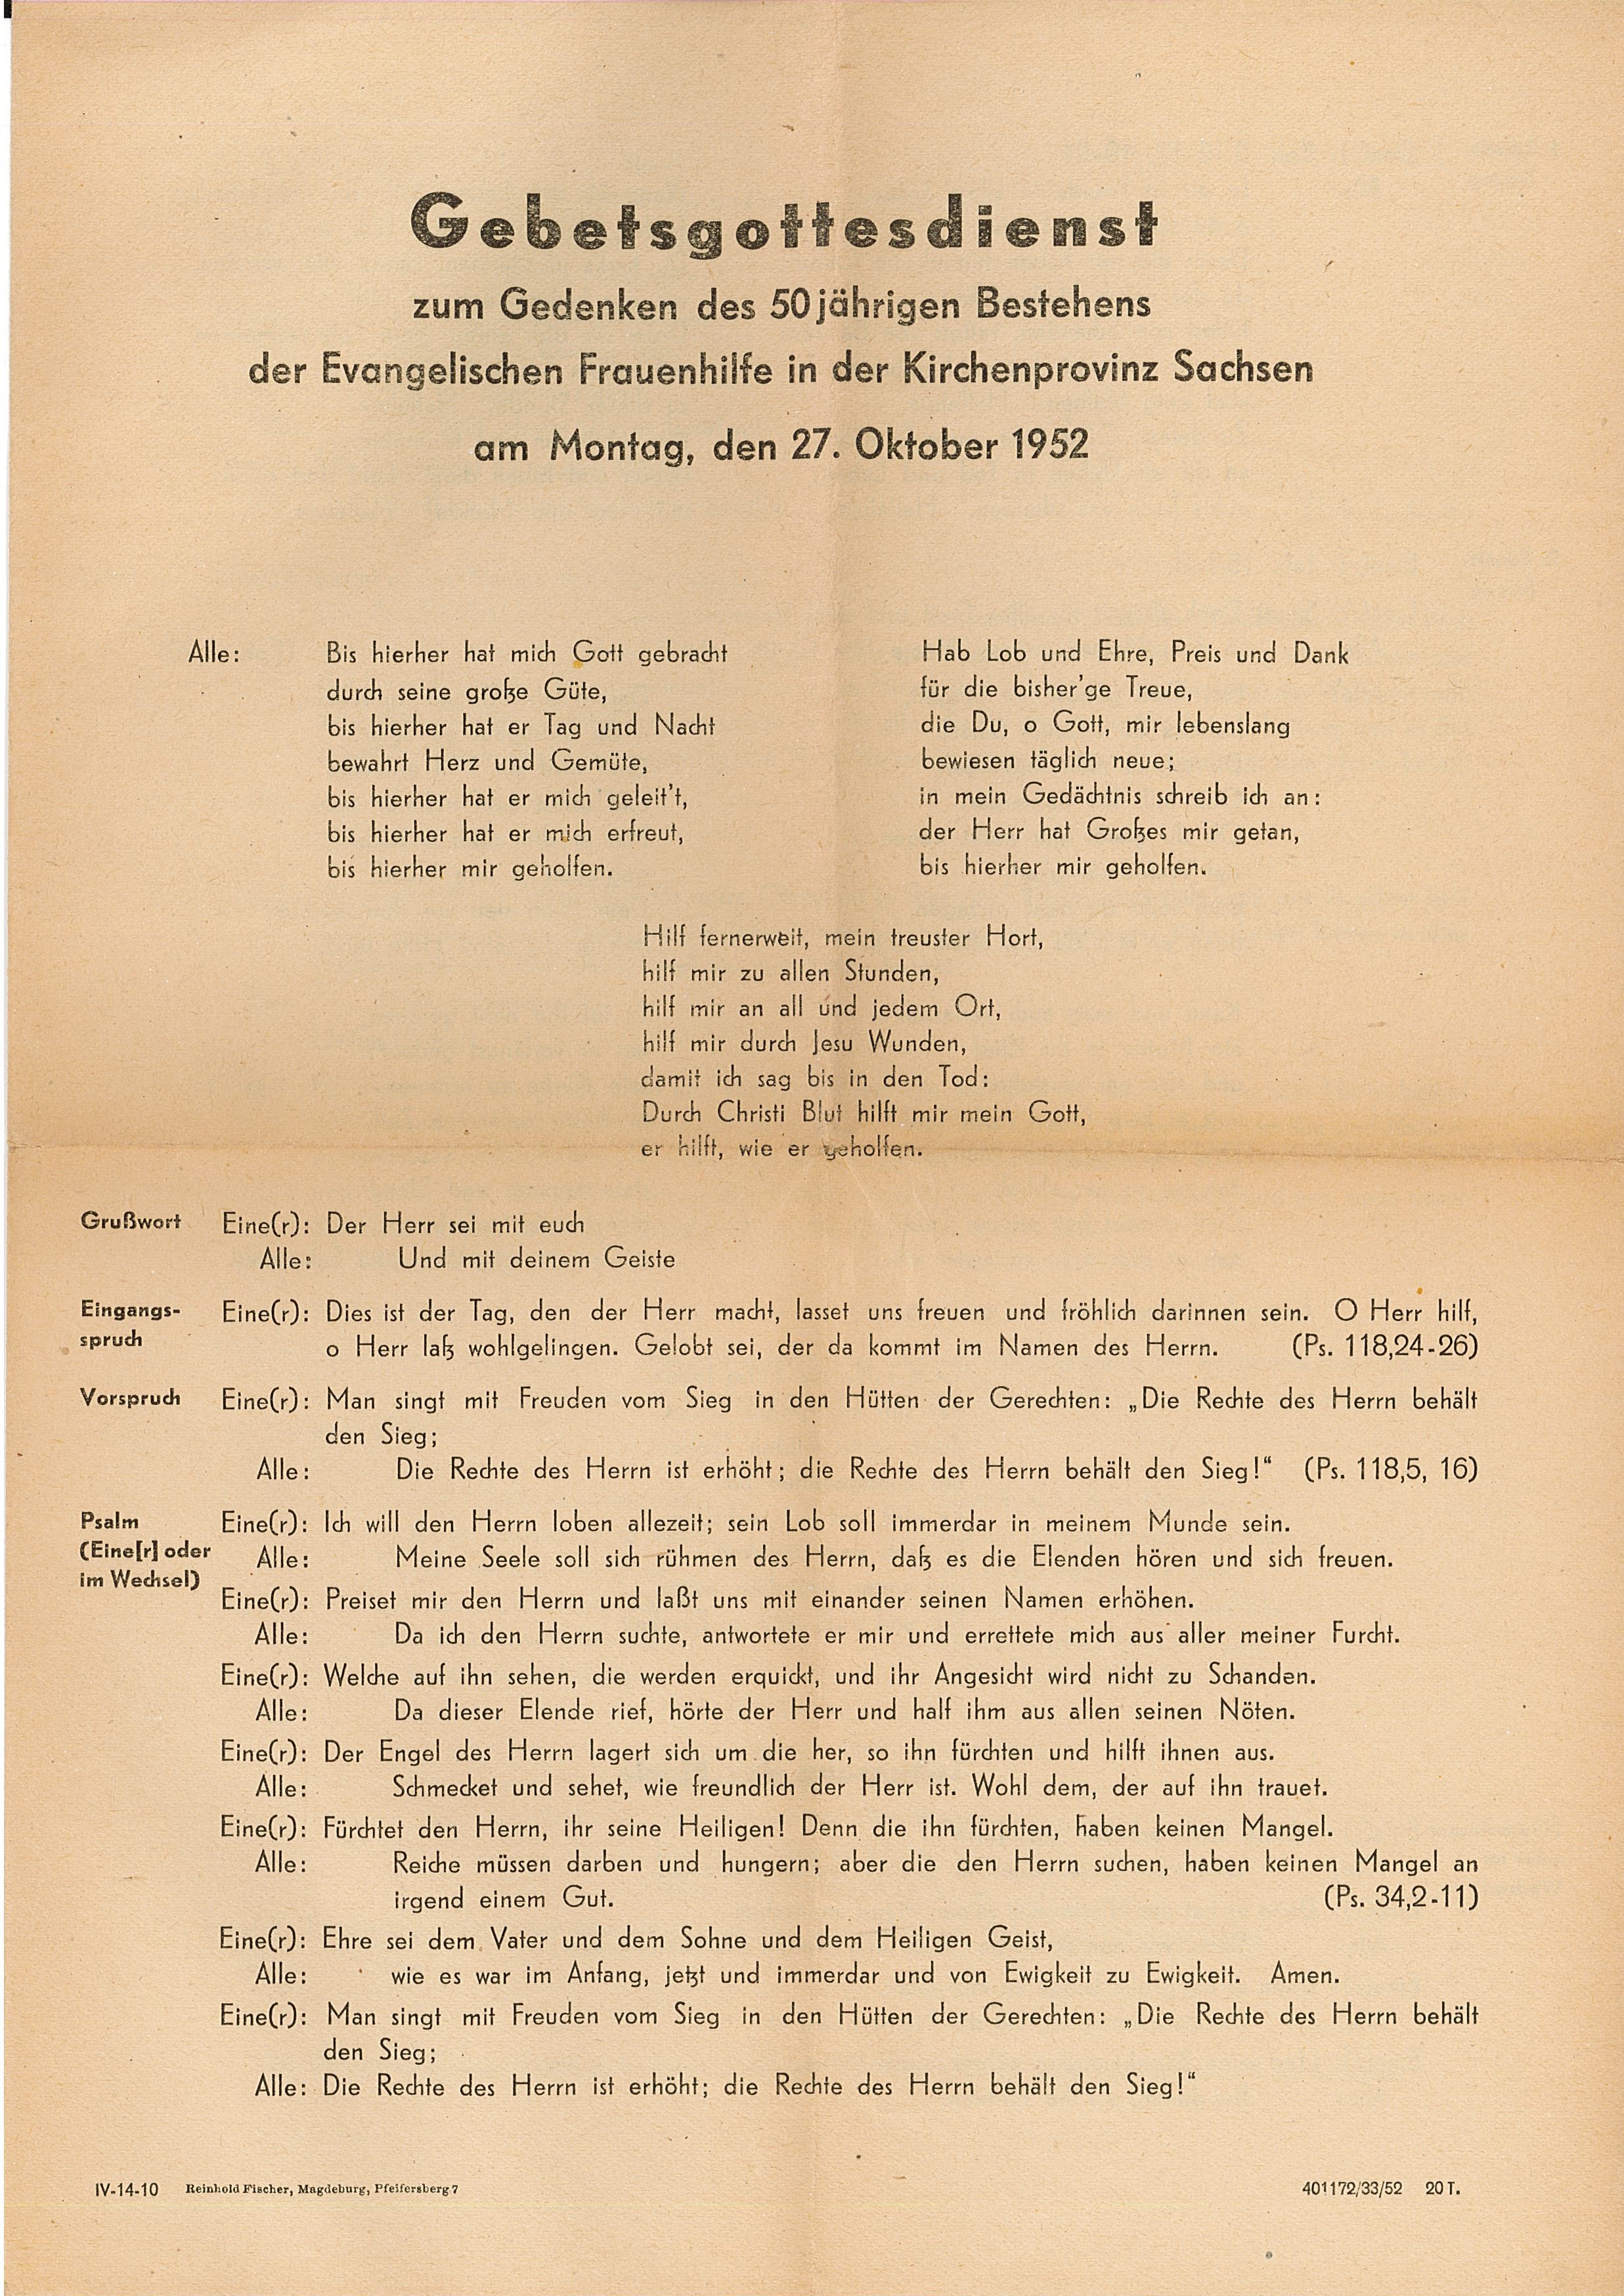 Textblatt zum Gebetsgottesdienst, 27. Oktober 1952 (Museum Wolmirstedt RR-F)